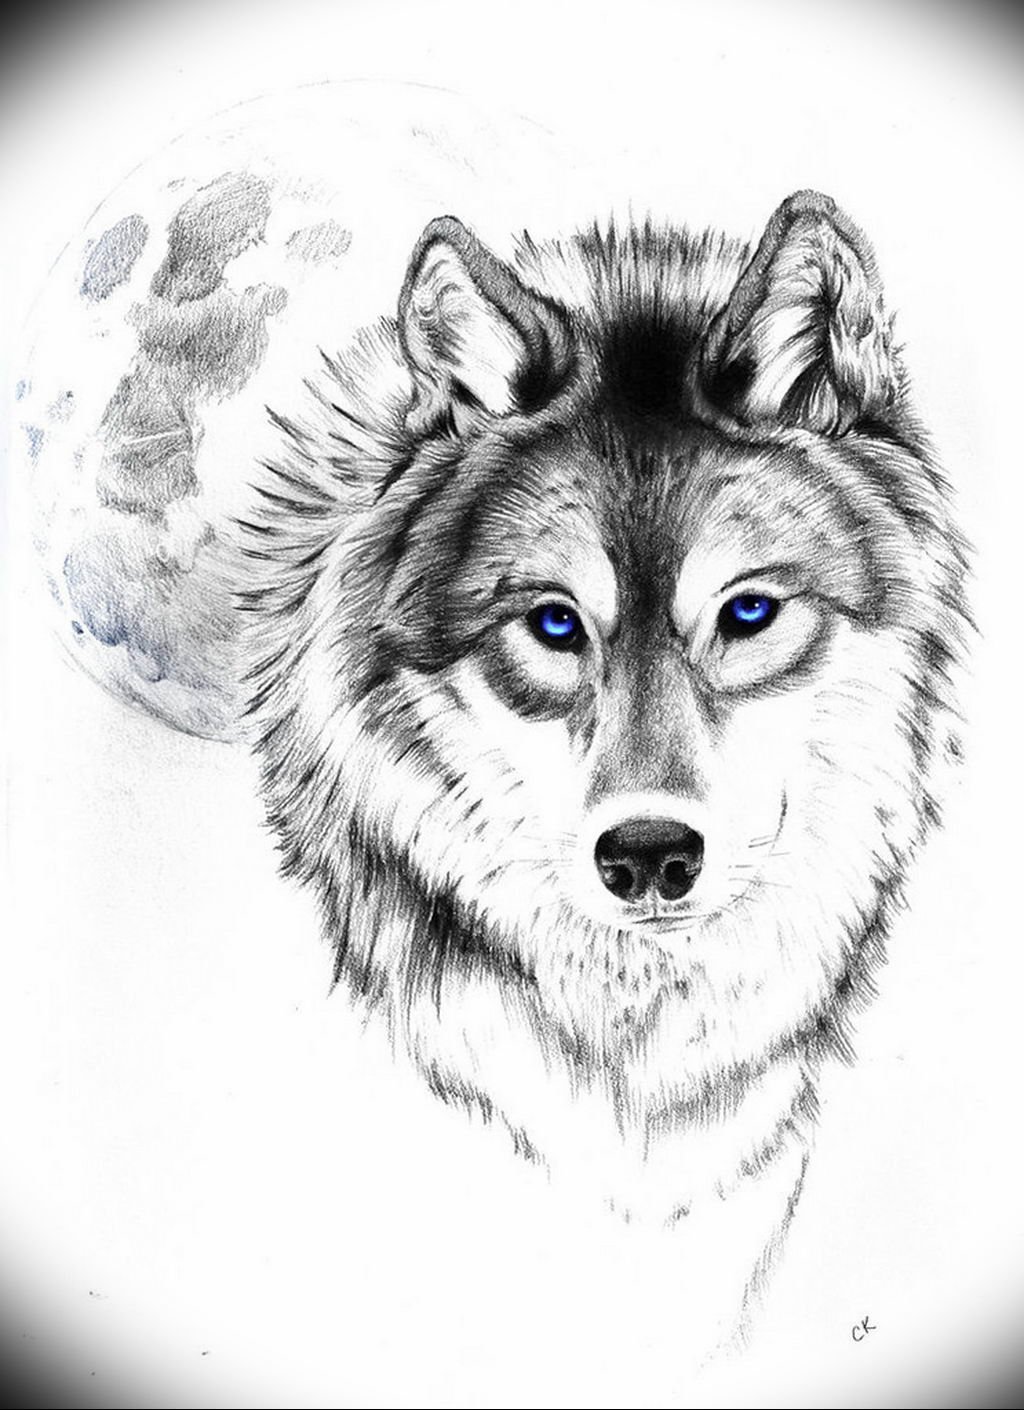 Татуировки волка на грудине мужские - страсть к диким корням и силе